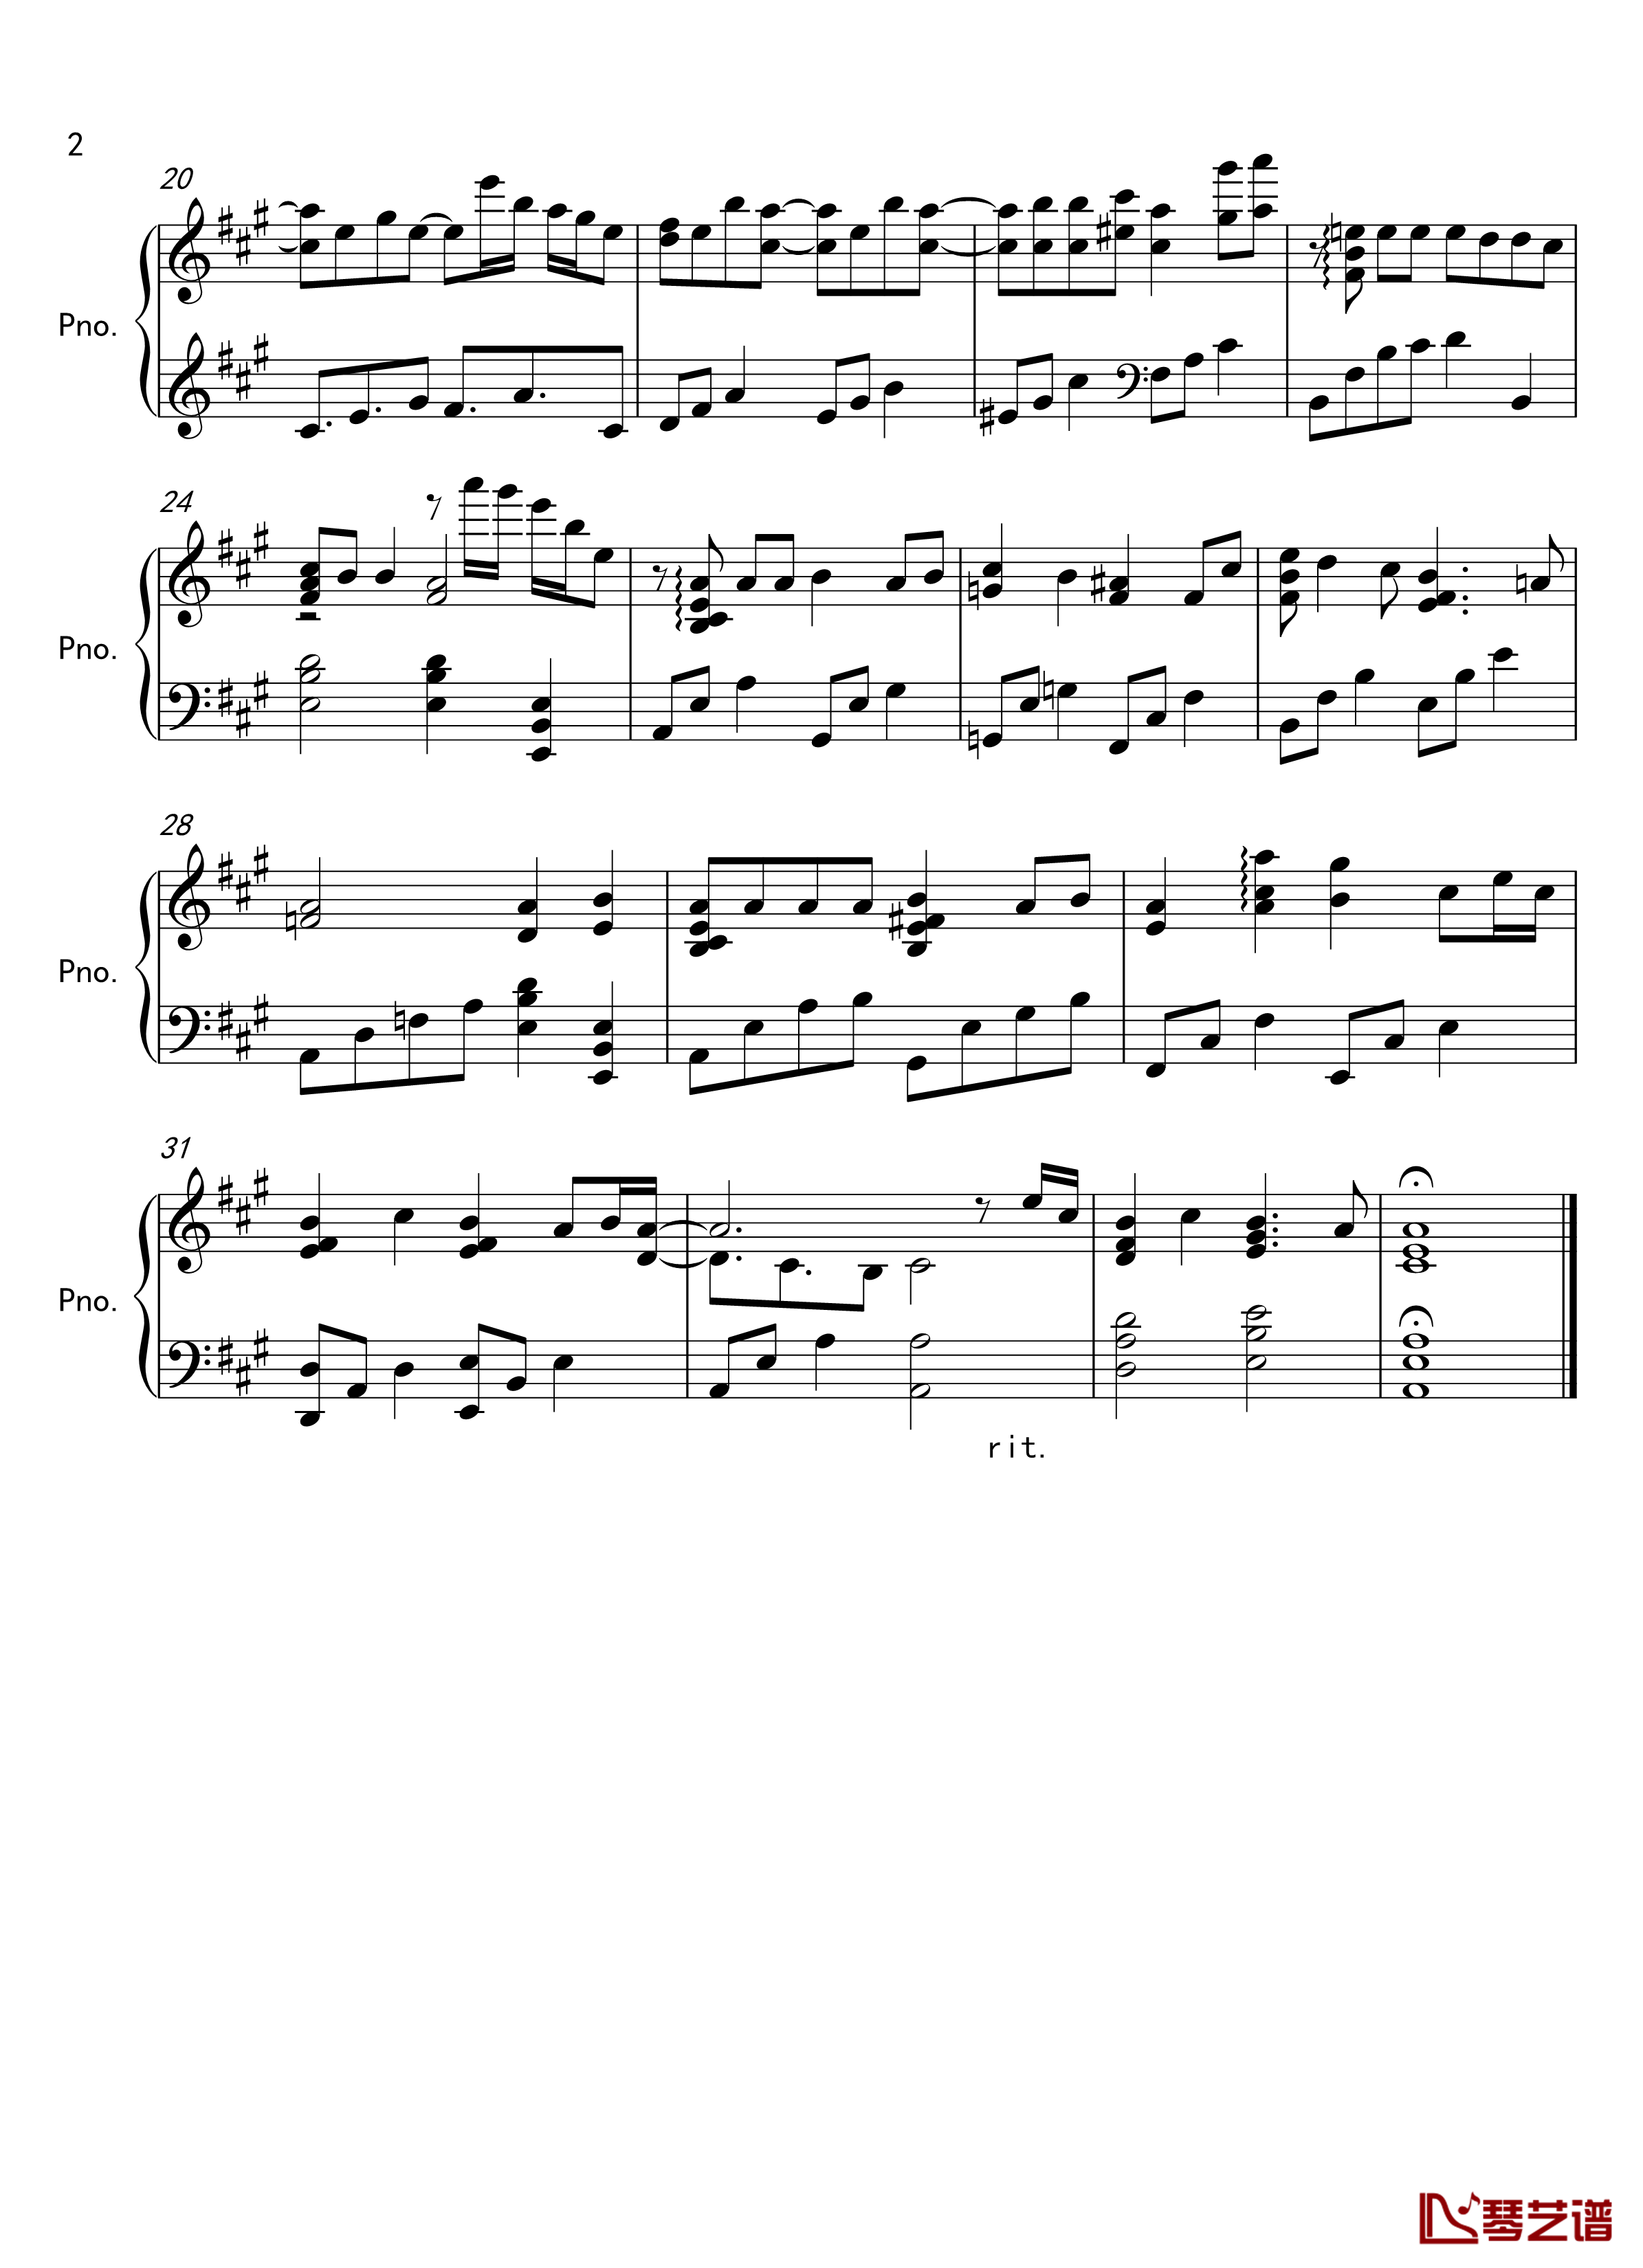  みちしるべ钢琴谱-紫罗兰永恒花园-ED2